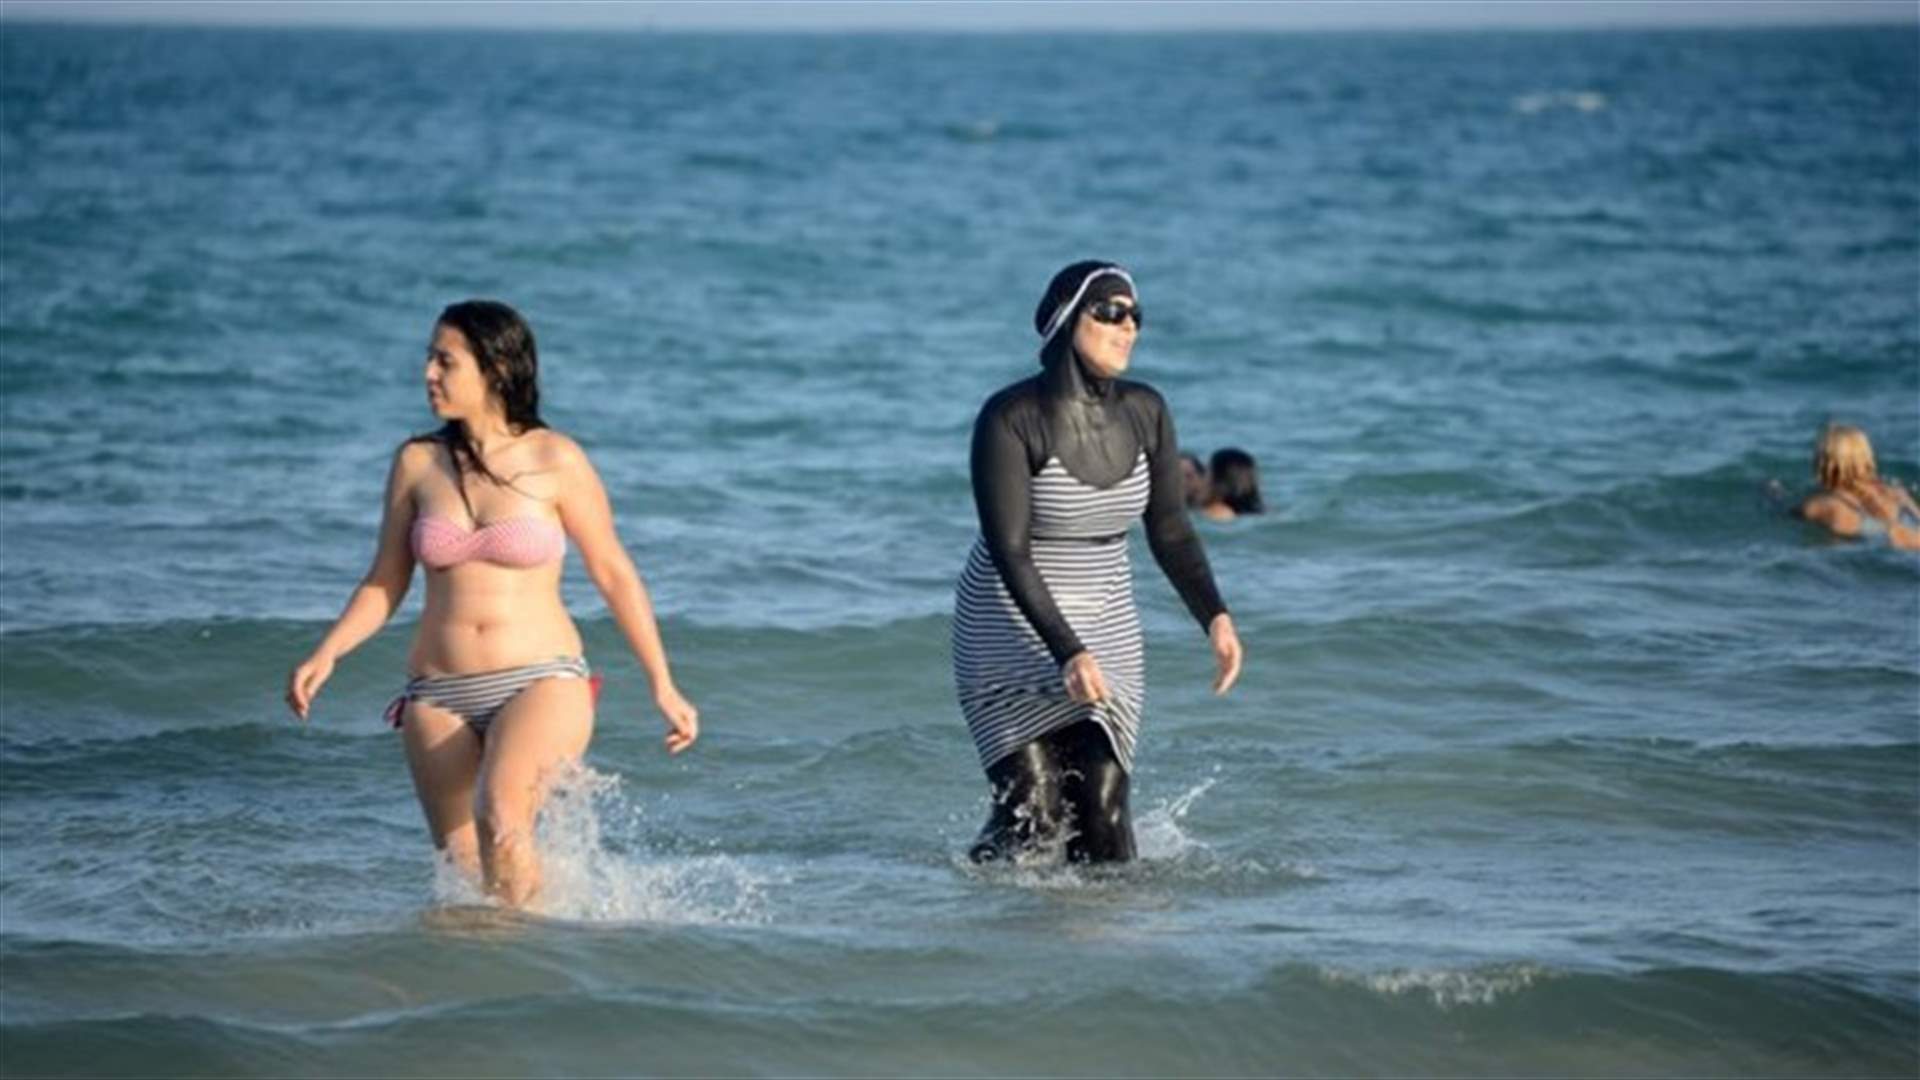 مجلس الدولة الفرنسي يعلق قرار حظر لباس البحر الاسلامي